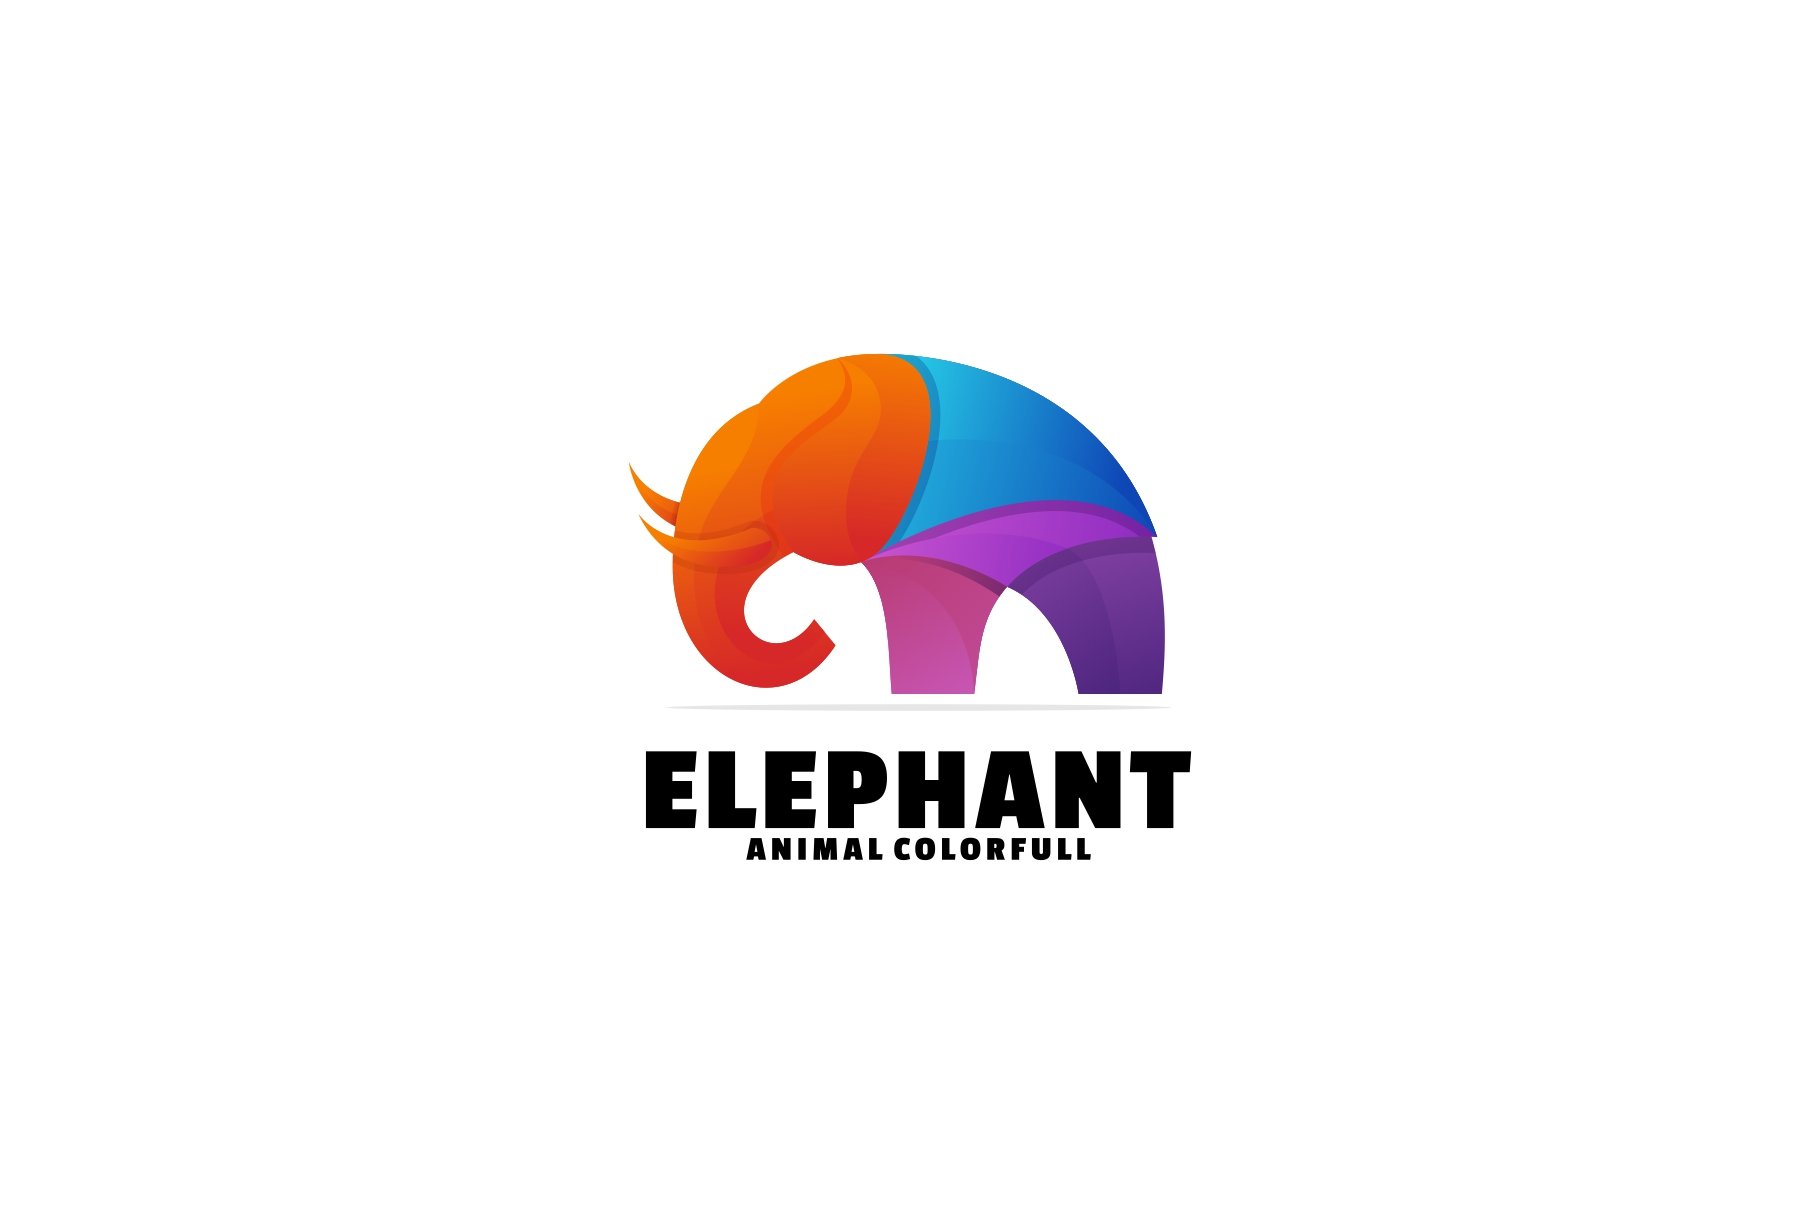 Elephant Colorful Logo cover image.